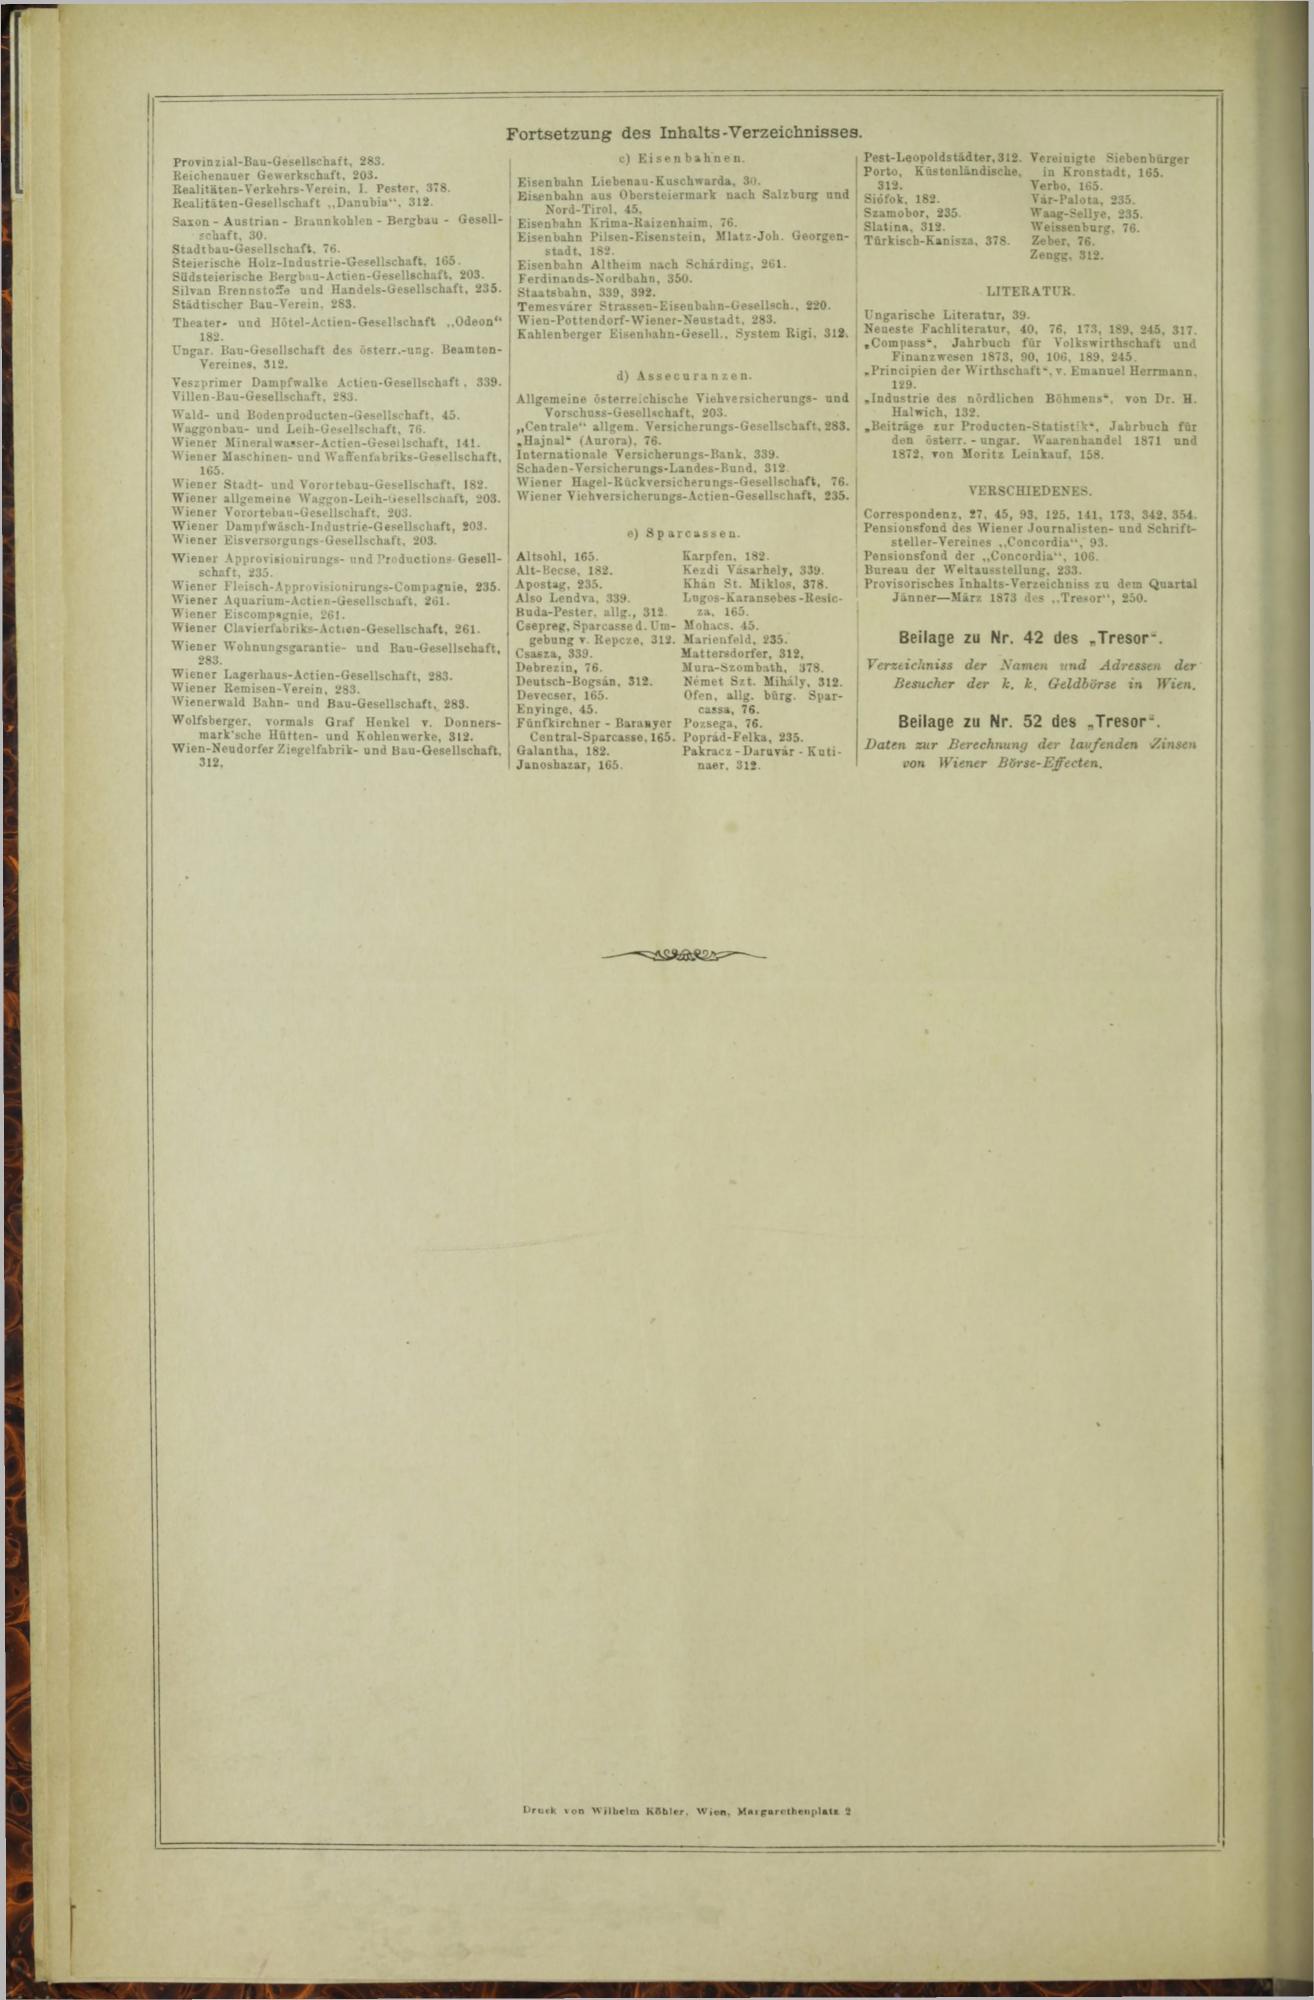 Der Tresor 21.01.1873 - Page 22